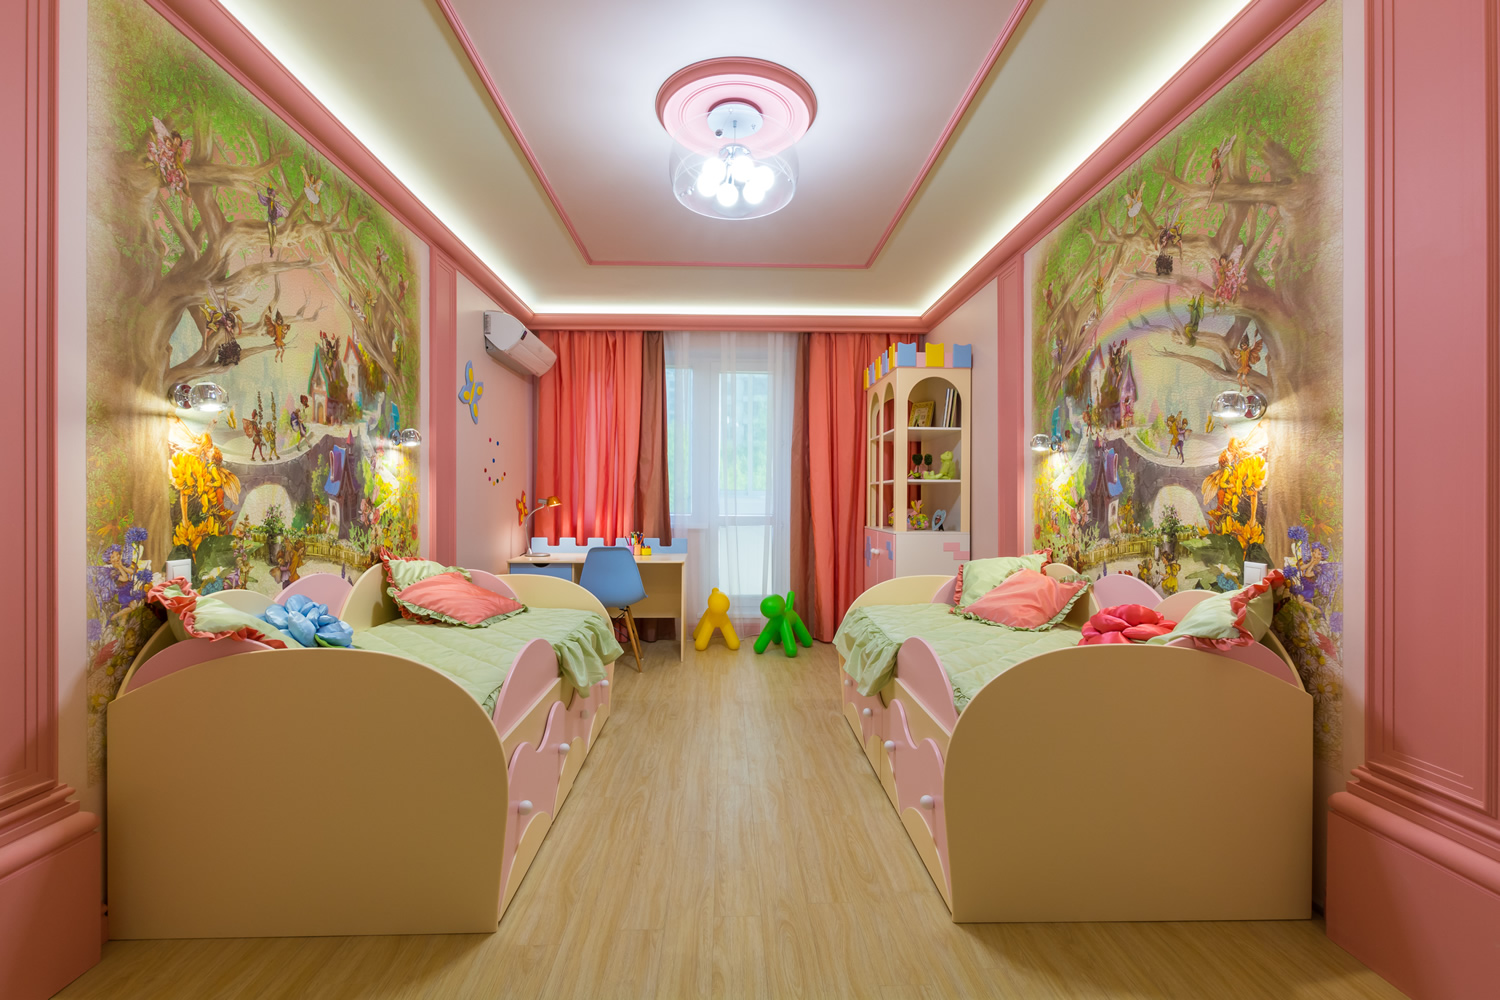 Chambre d'enfant dans un style moderne